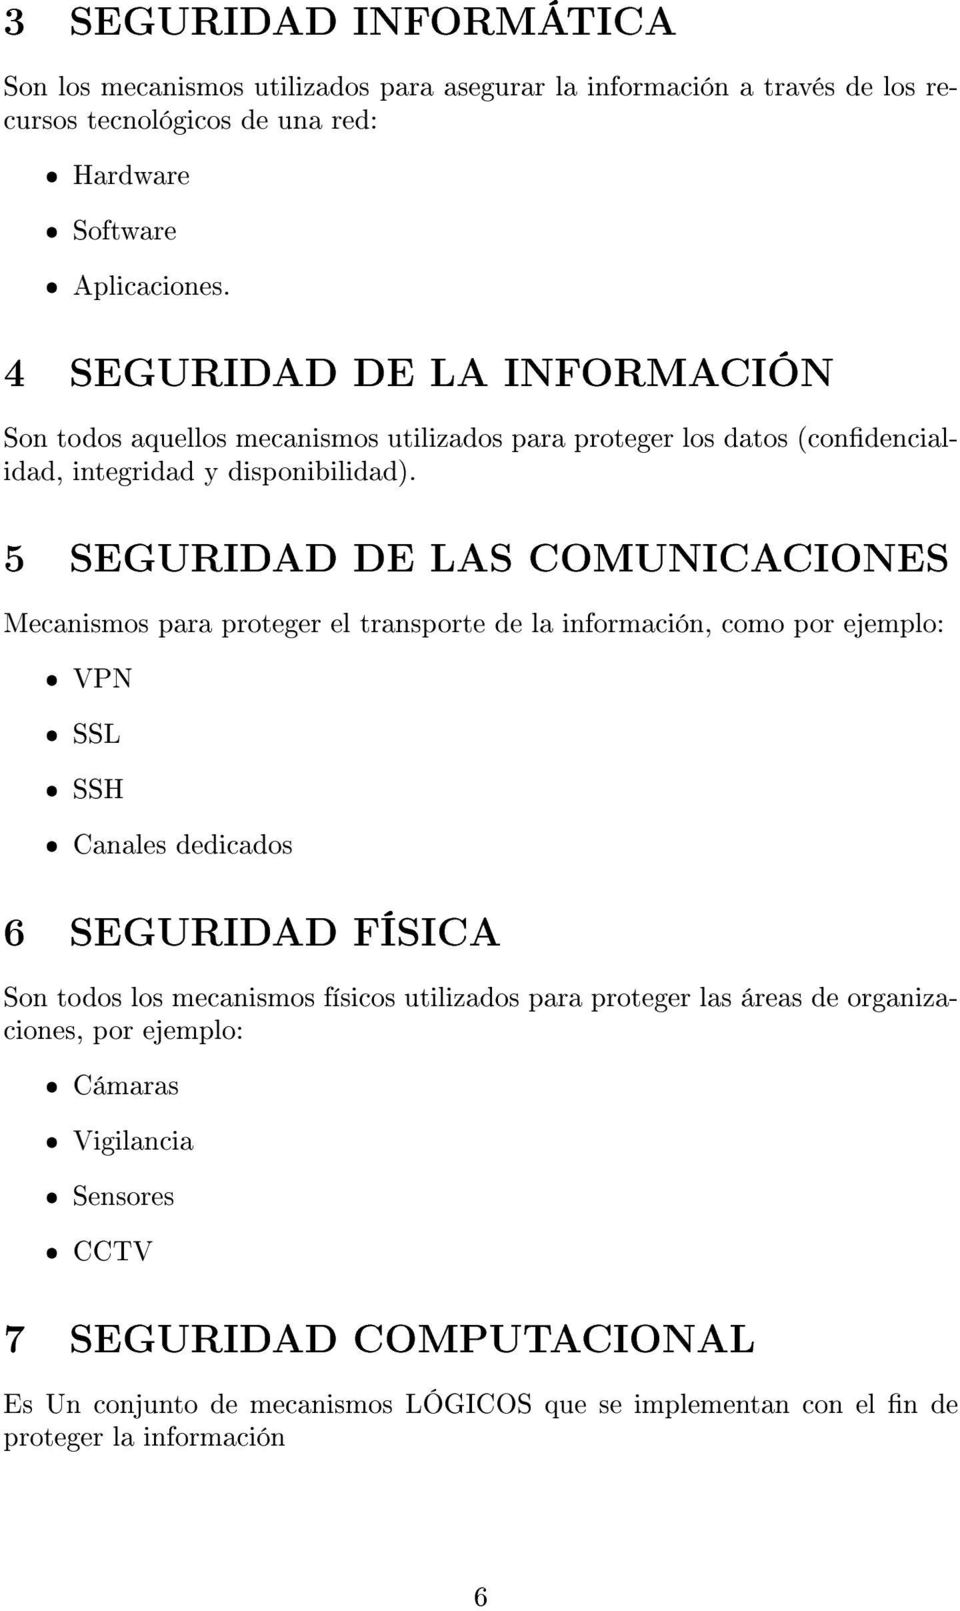 5 SEGURIDAD DE LAS COMUNICACIONES Mecanismos para proteger el transporte de la información, como por ejemplo: ˆ VPN ˆ SSL ˆ SSH ˆ Canales dedicados 6 SEGURIDAD FÍSICA Son todos los